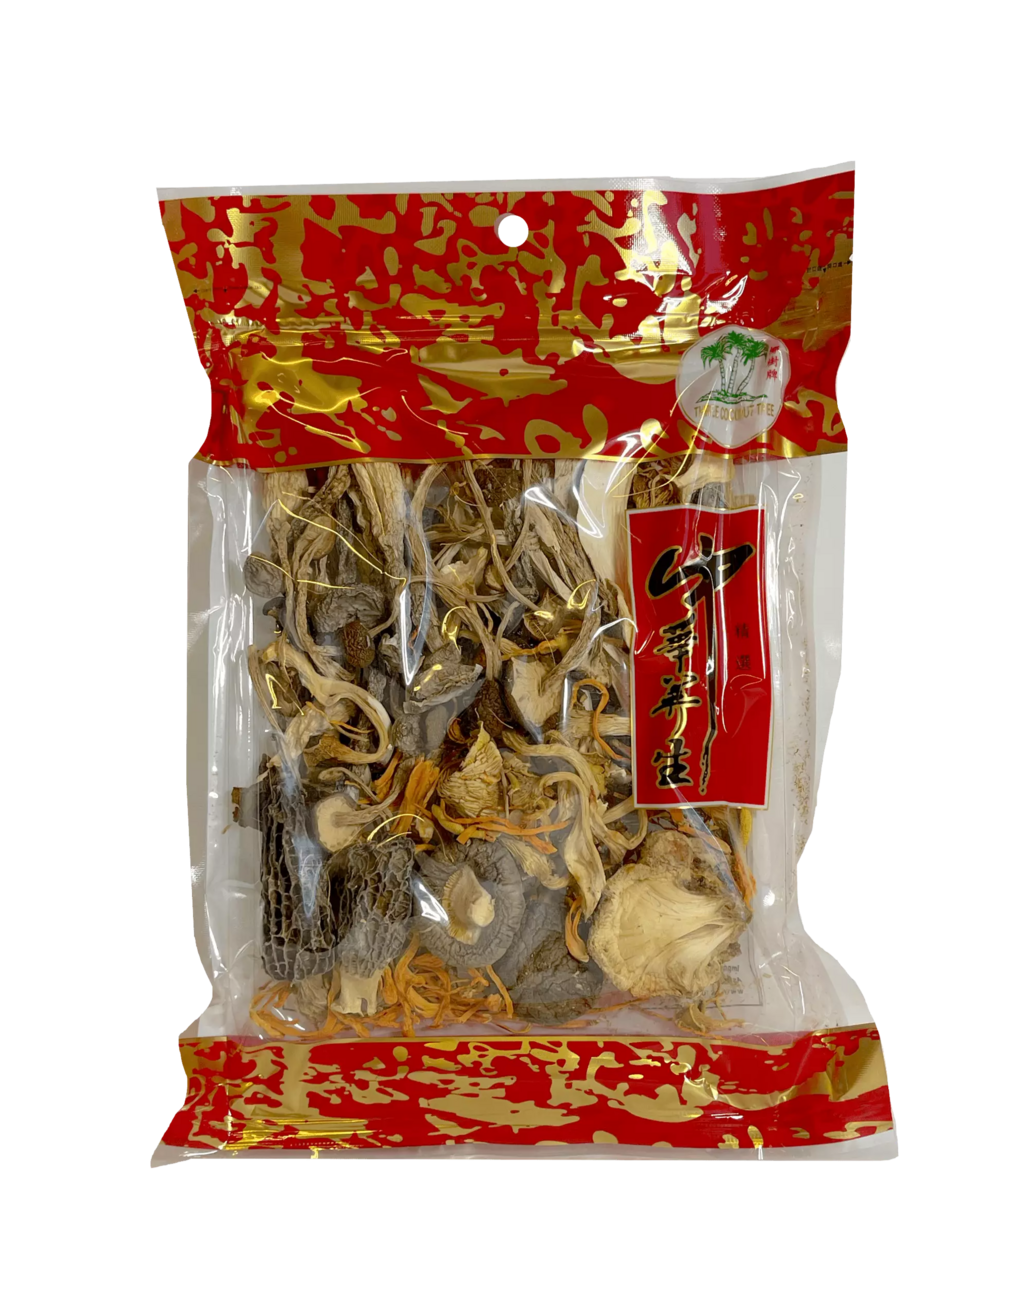 综合干燥蘑菇 70g TCT 中国